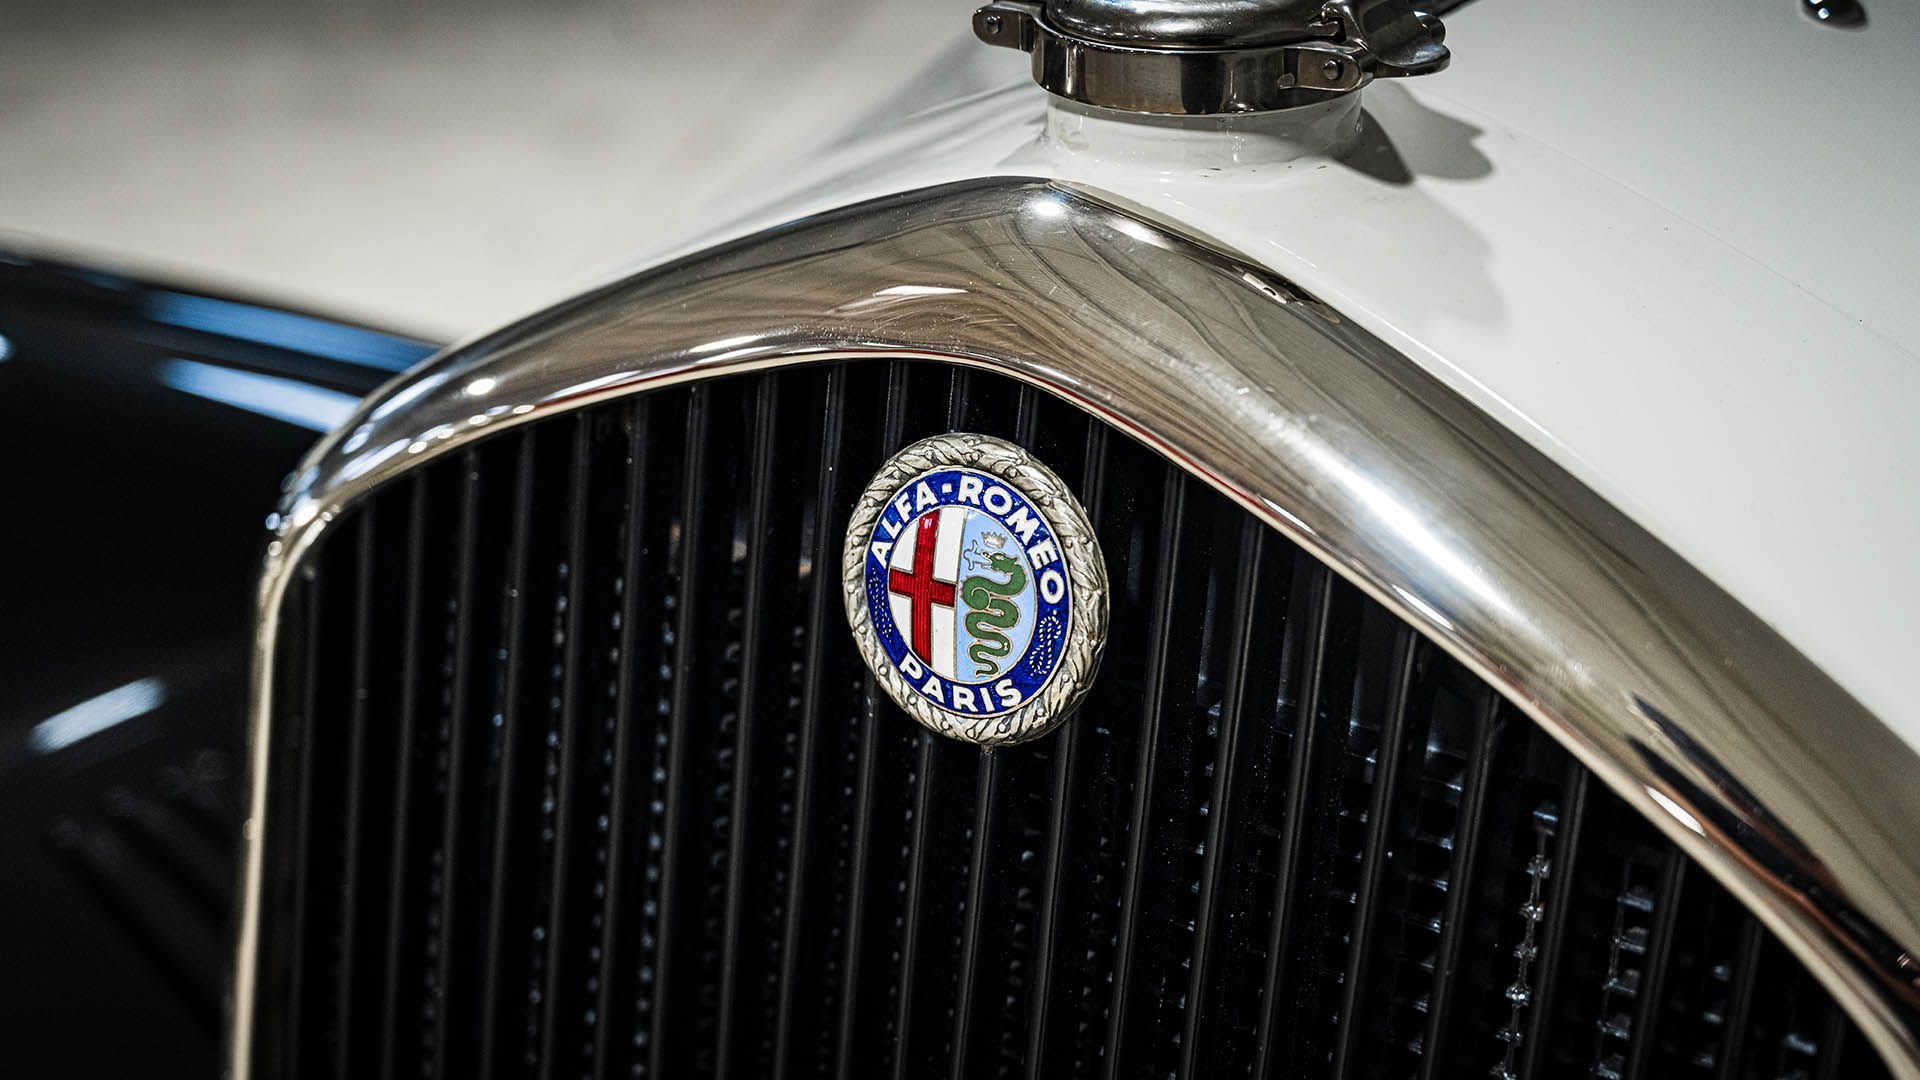 For Sale 1932 Alfa Romeo 6C 1750 Series V Gran Sport Figoni Roadster